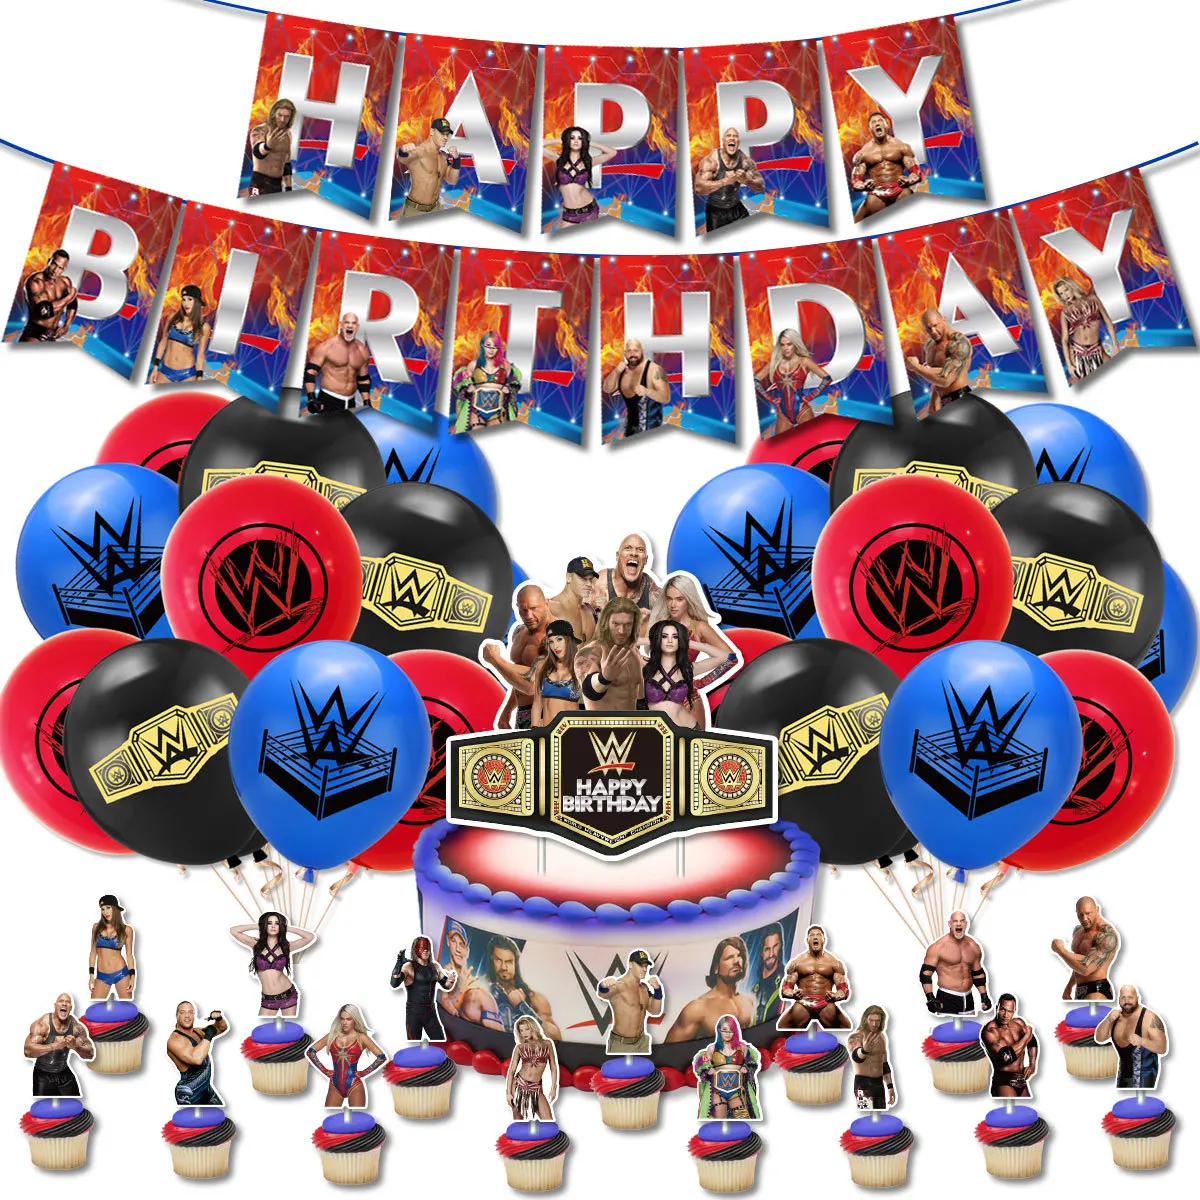 Wrestling Entertainment Tema Compleanno Palloncino Decorazione Banner Lattice Palloncino Cake Topper Adatto Per la Decorazione di Feste a Tema Forniture per Feste per Bambini WWE 